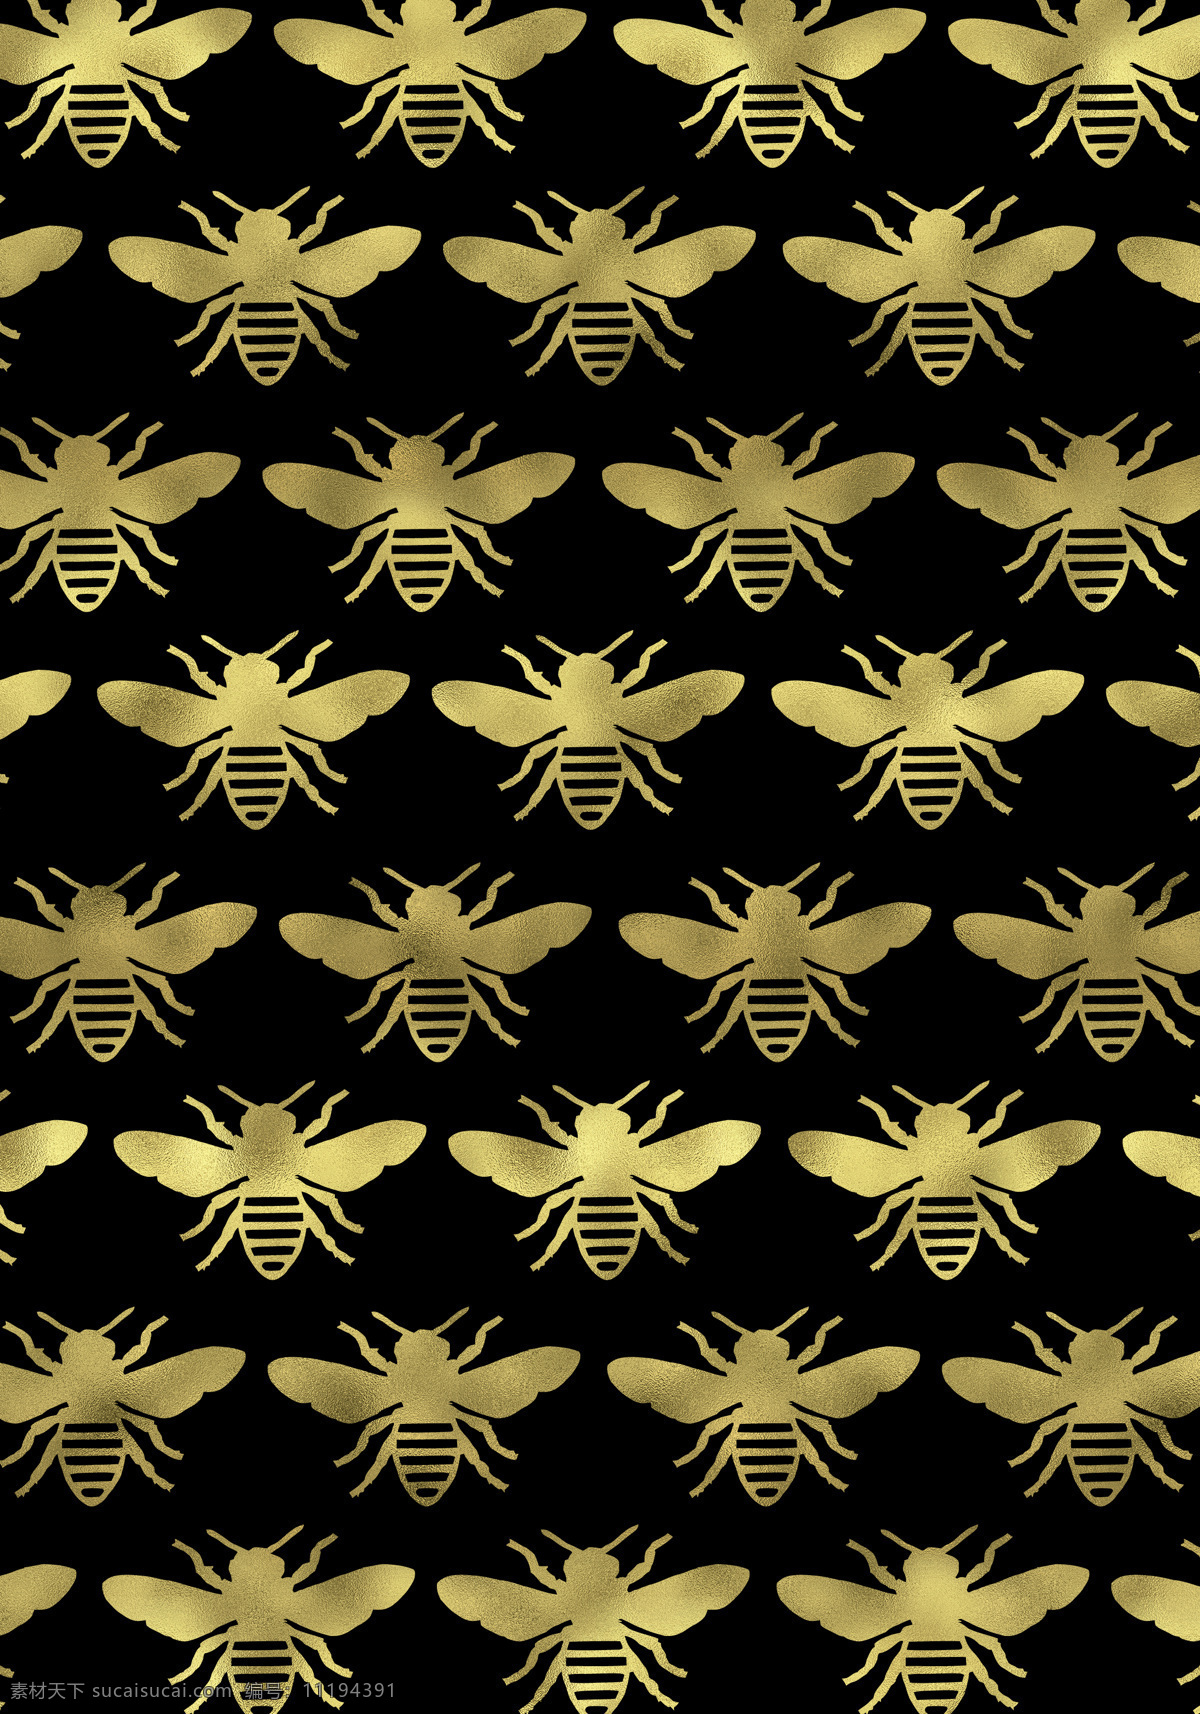 小蜜蜂背景图 蜜蜂 黄蜂 蜂巢 飞蛾 对称 无缝连续 金色 碎金 洒金 金粉 镀金 金箔 闪光 闪亮 无缝 连续 背景 插图 装饰 简单 生物世界 昆虫